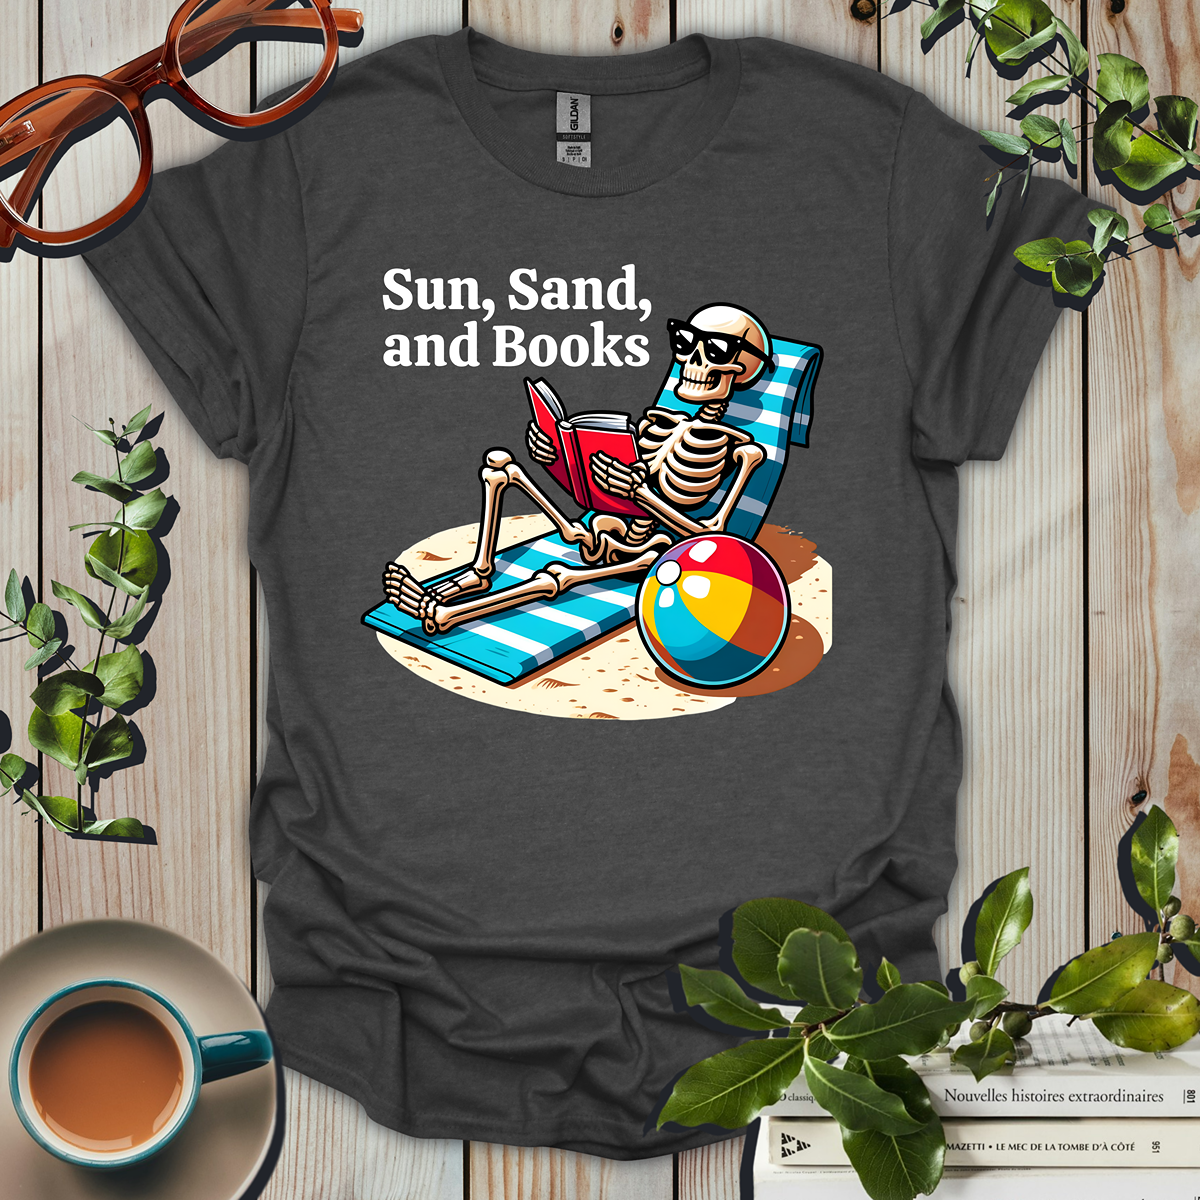 Sun, Sand, And Books T-Shirt